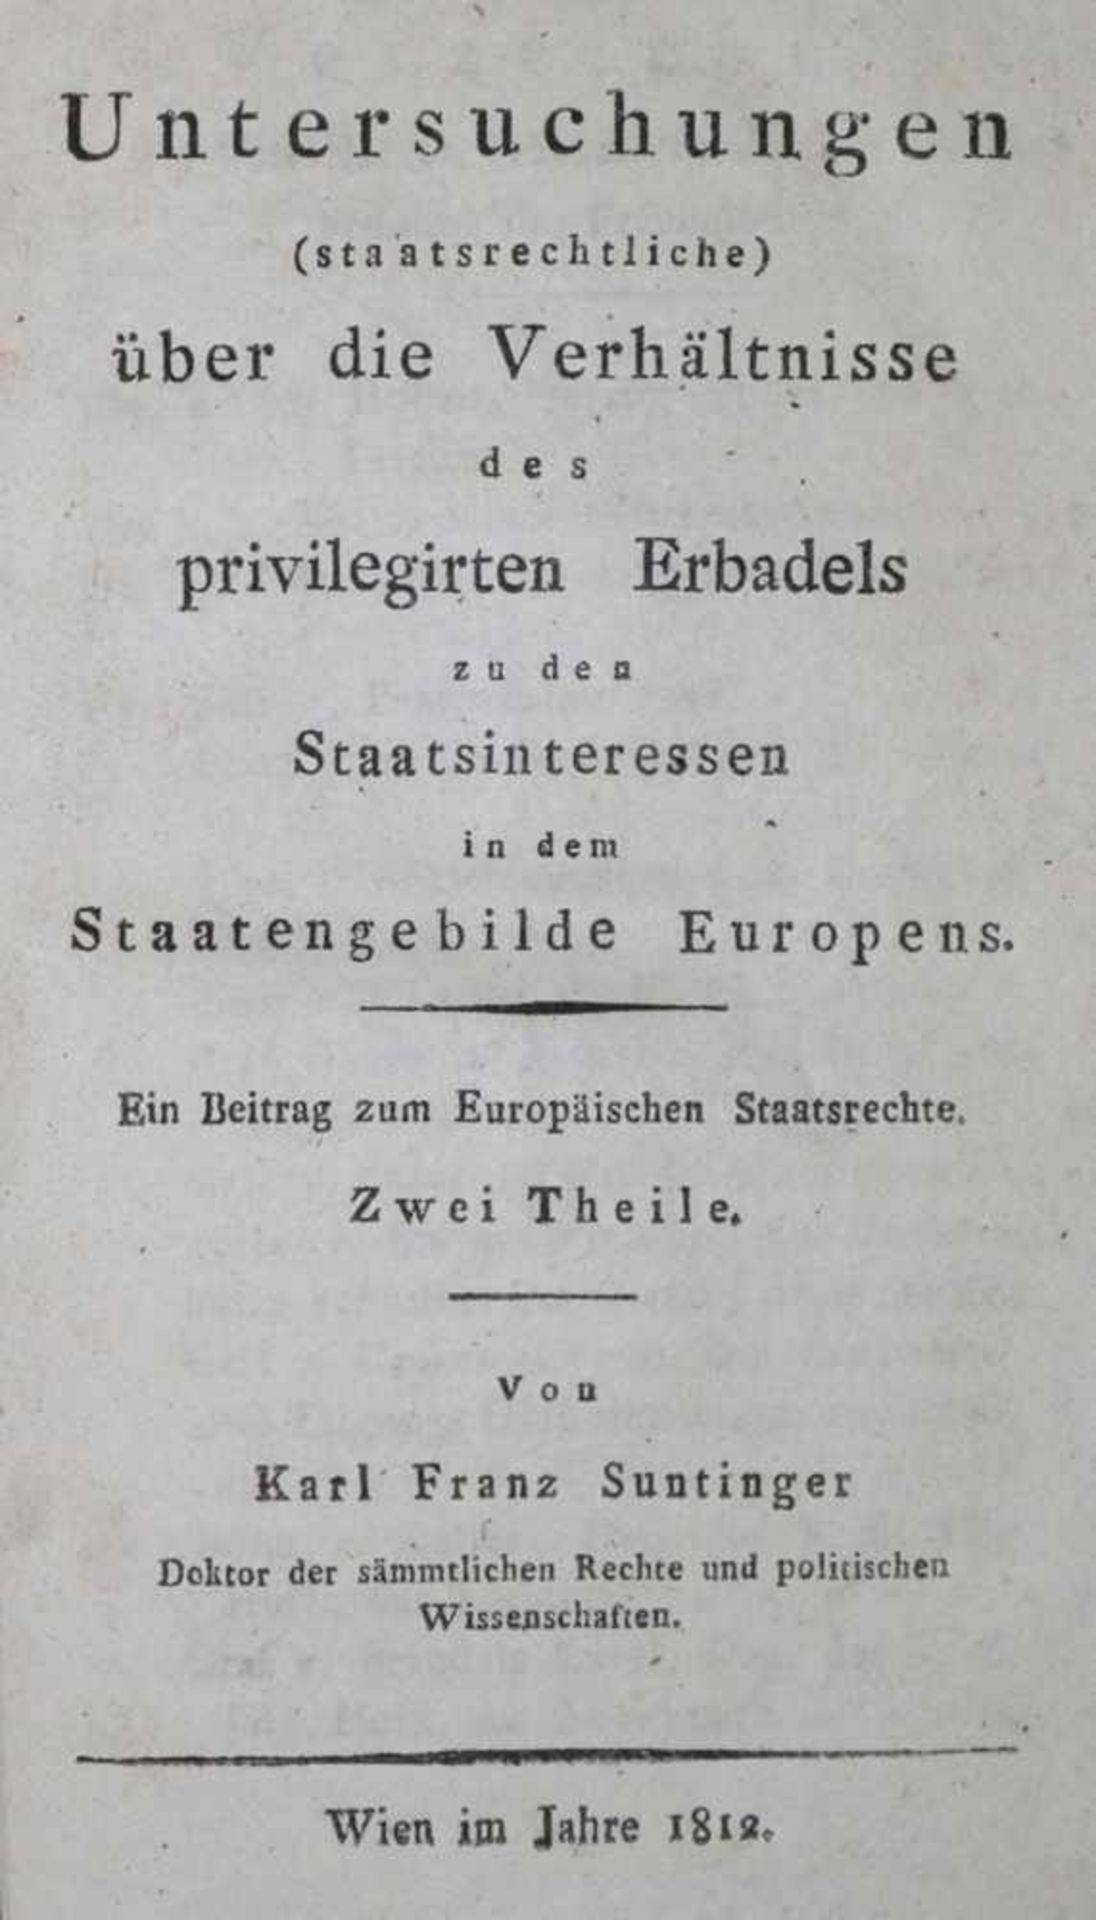 Suntinger,K.F.Untersuchungen (staatsrechtliche) über die Verhältnisse des privilegirten Erbadels